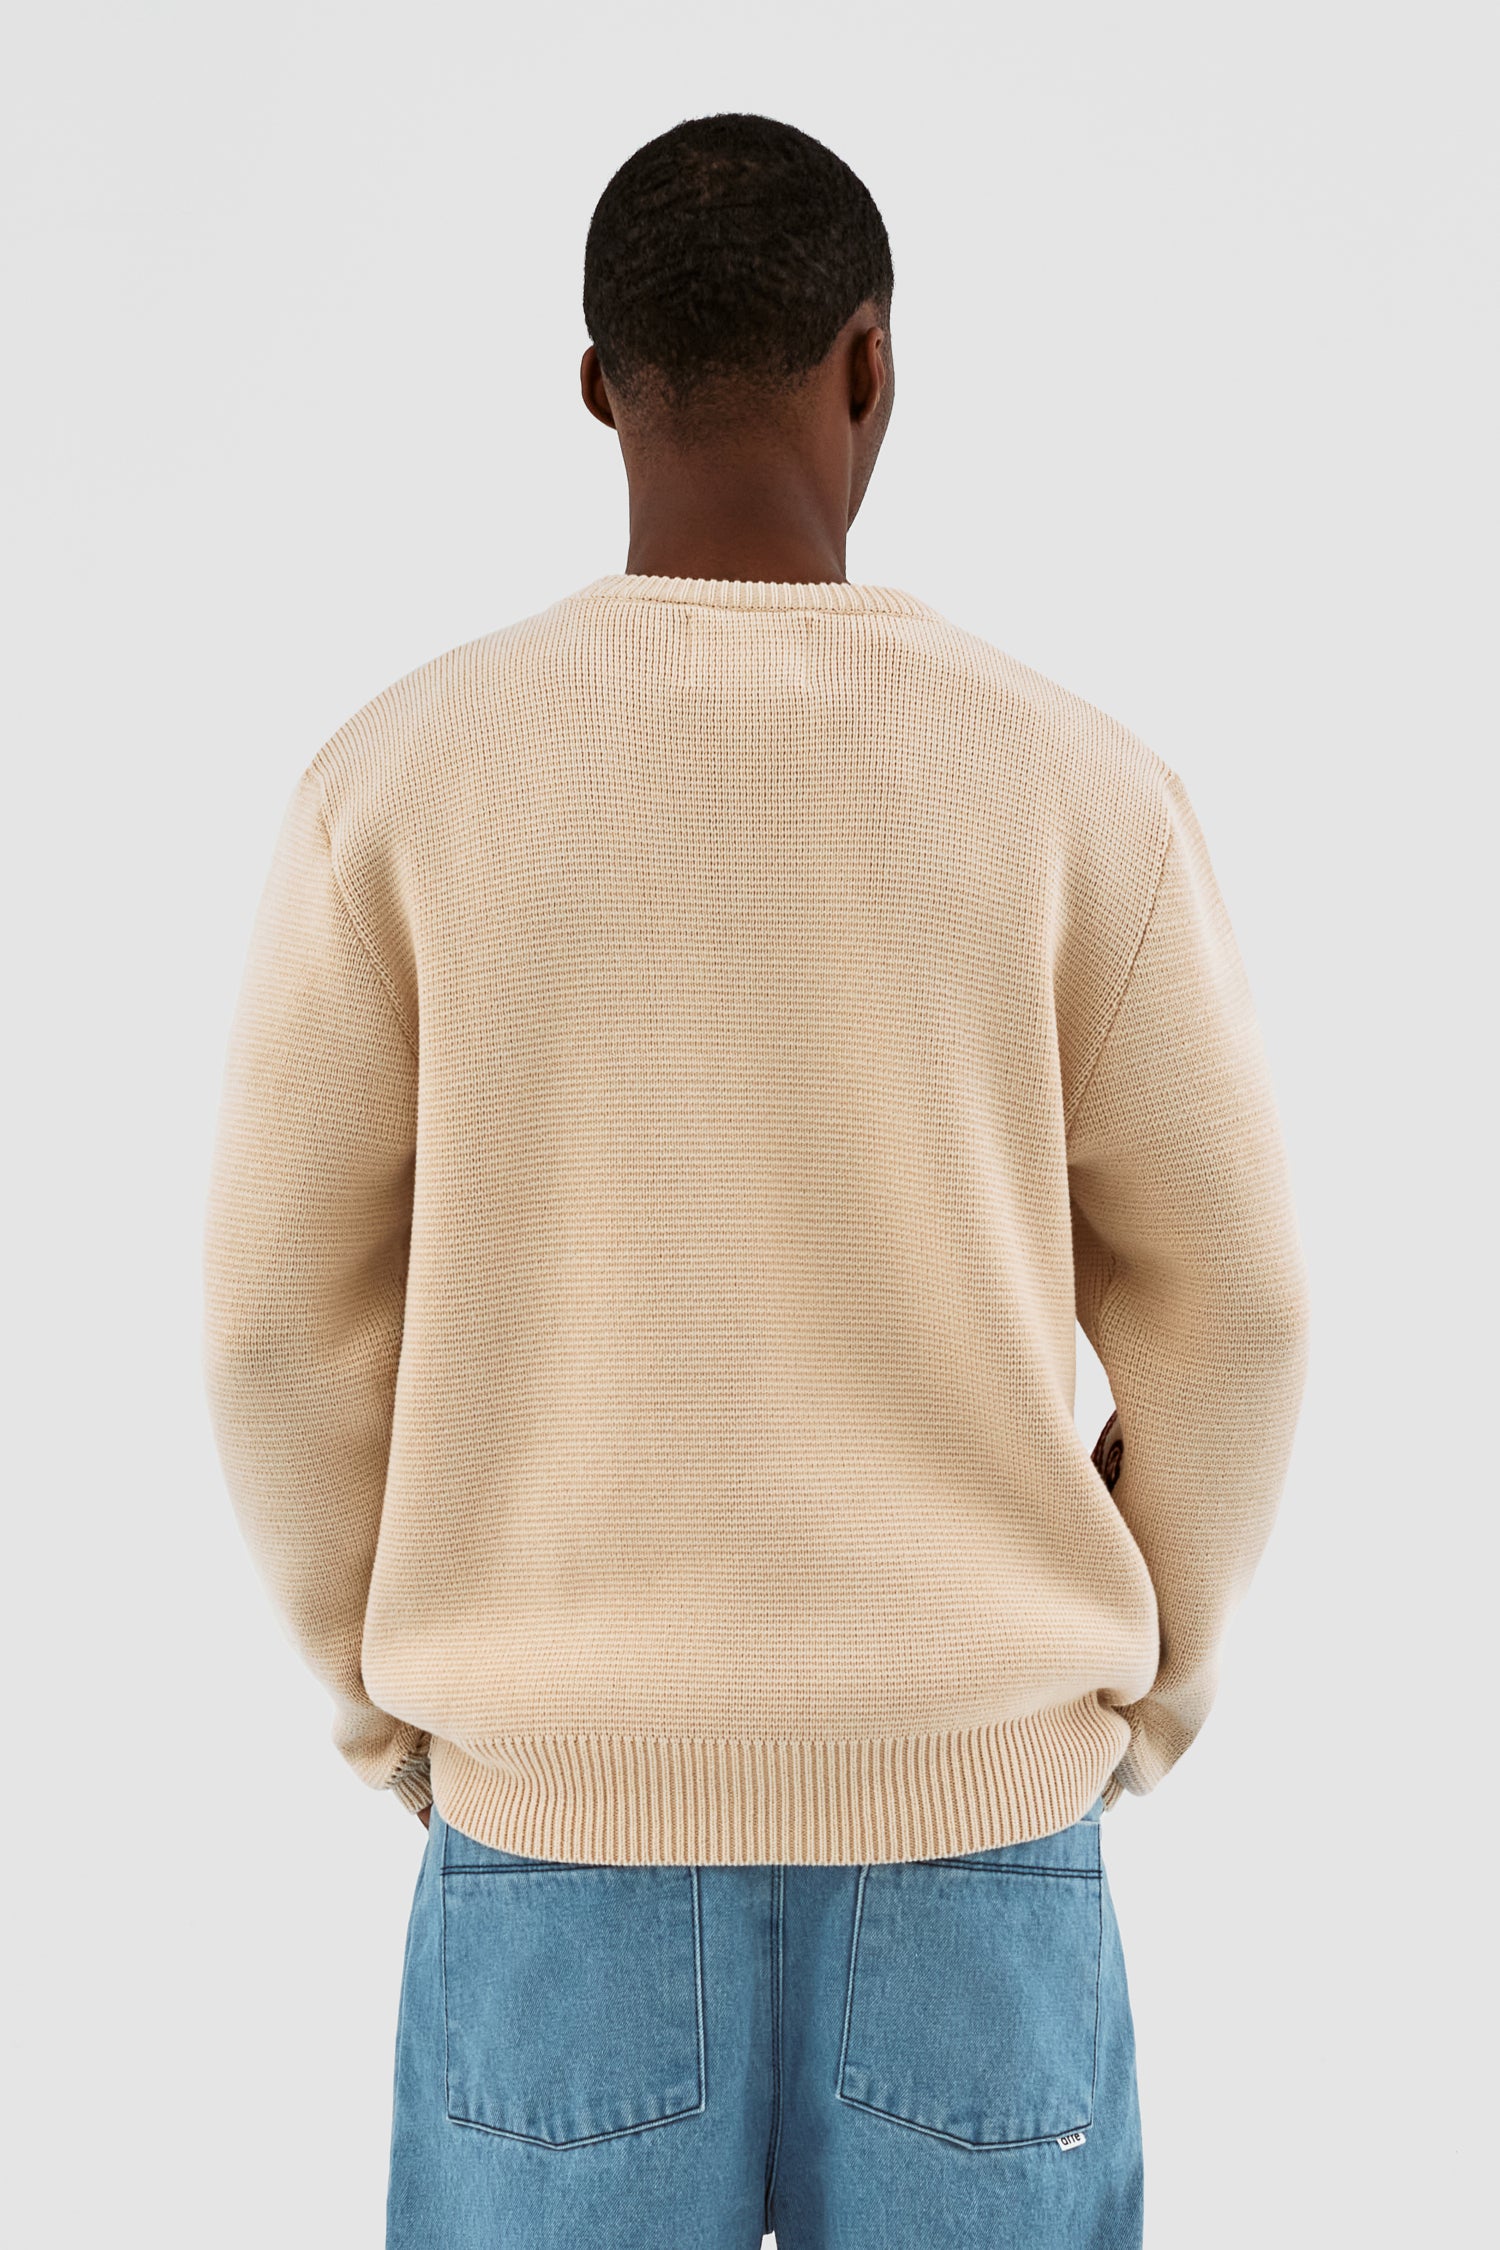 Kris Fighter Sweater - Cream